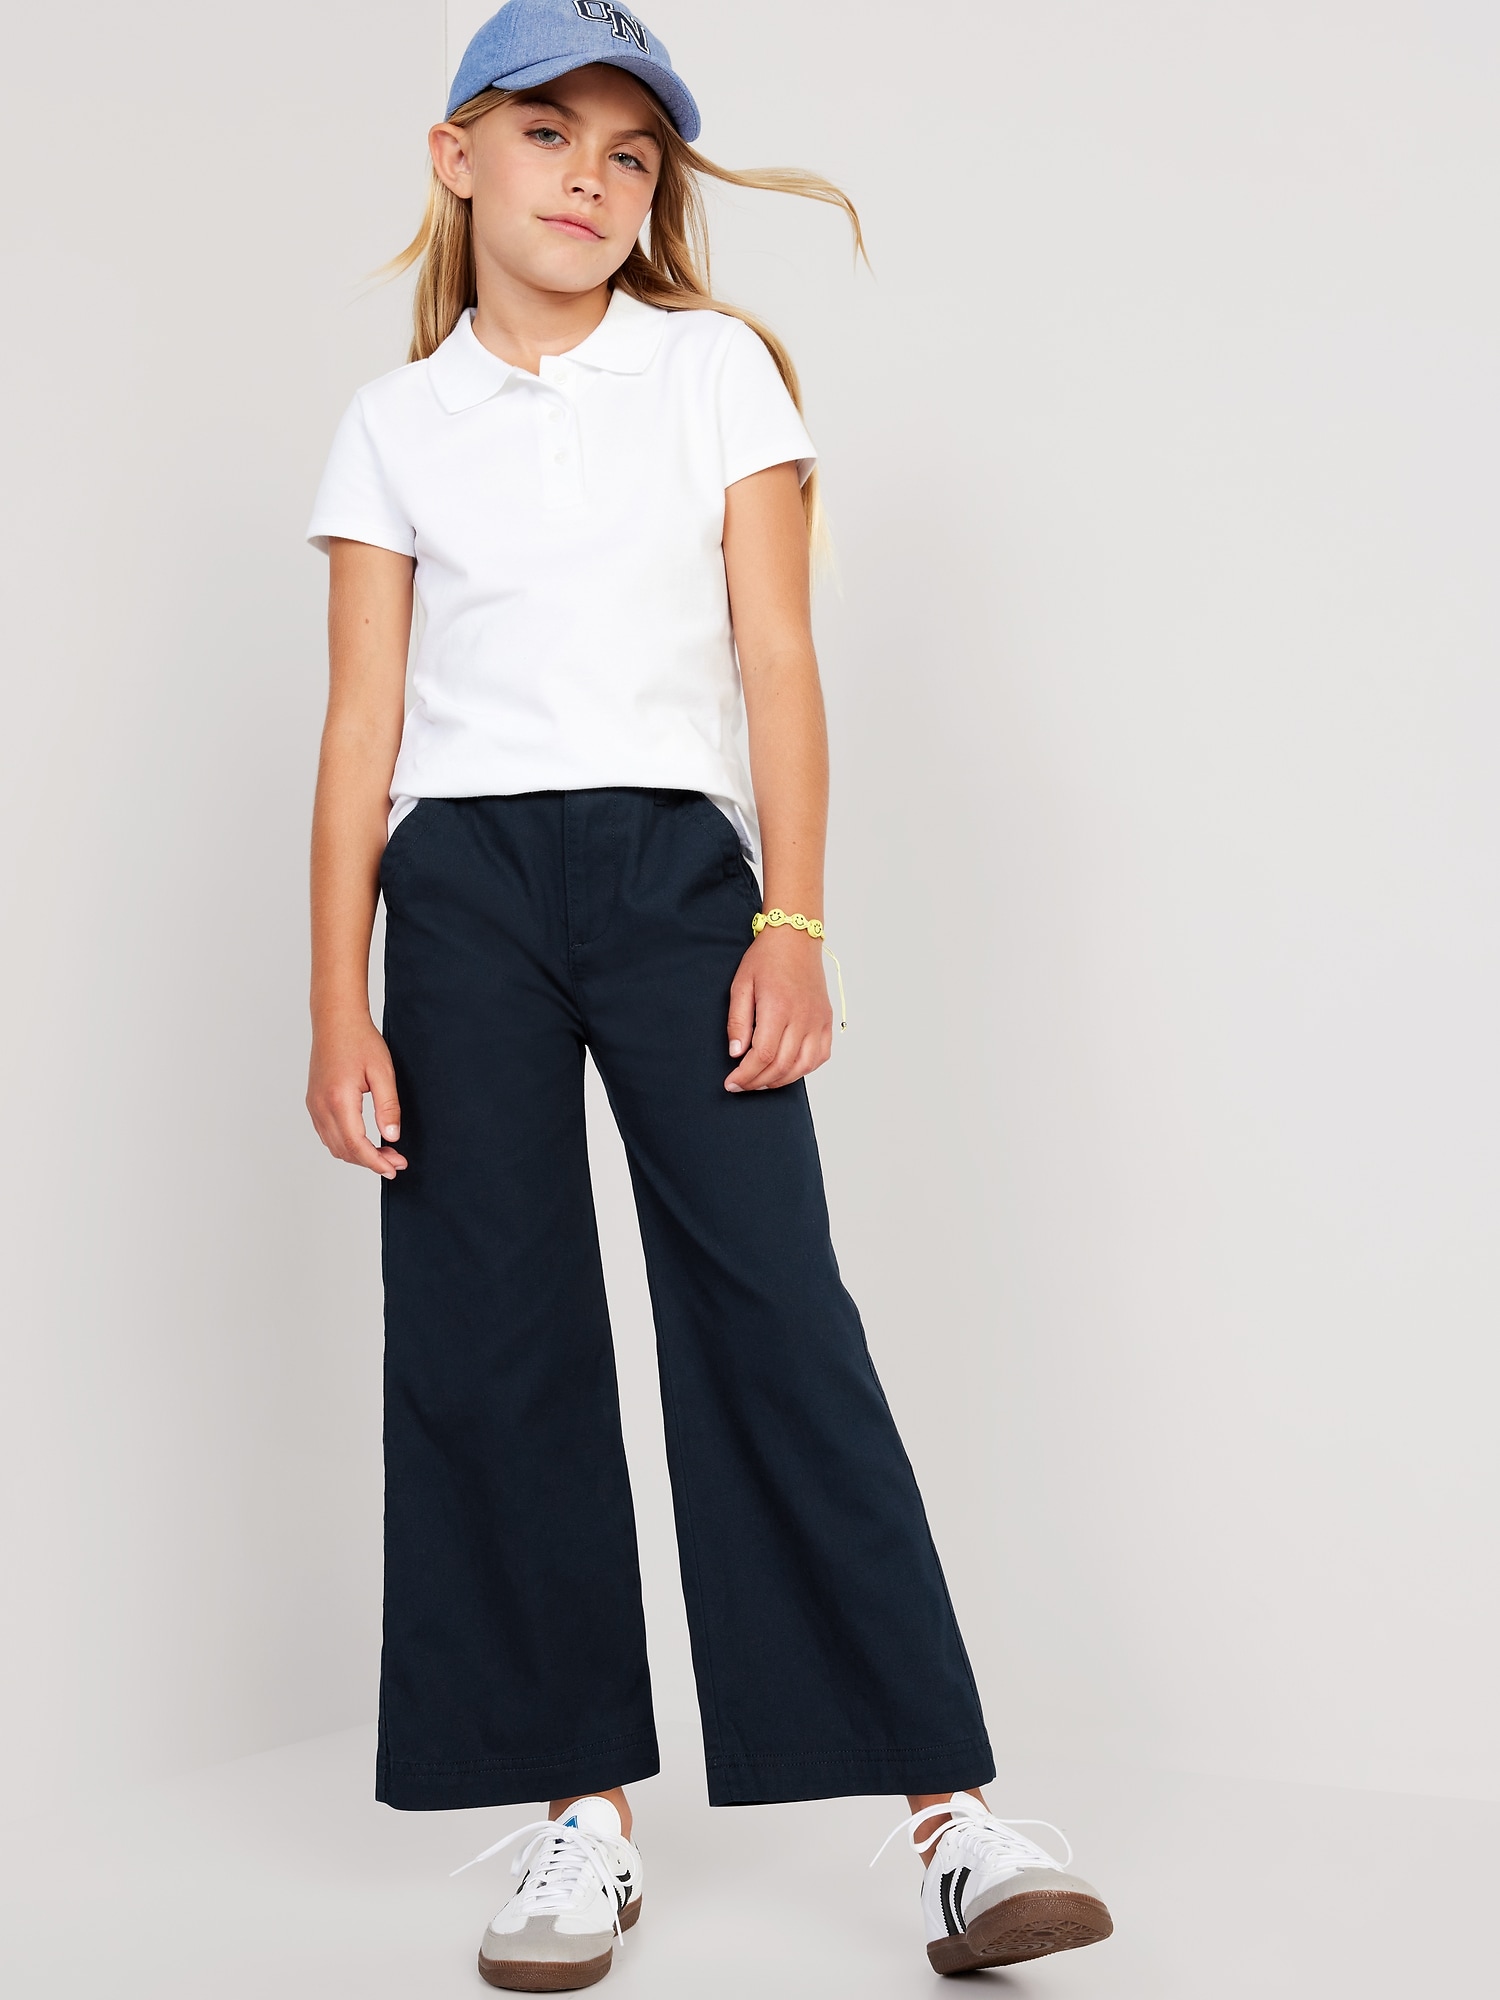 High-Waisted Wide-Leg School Uniform Pants for Girls